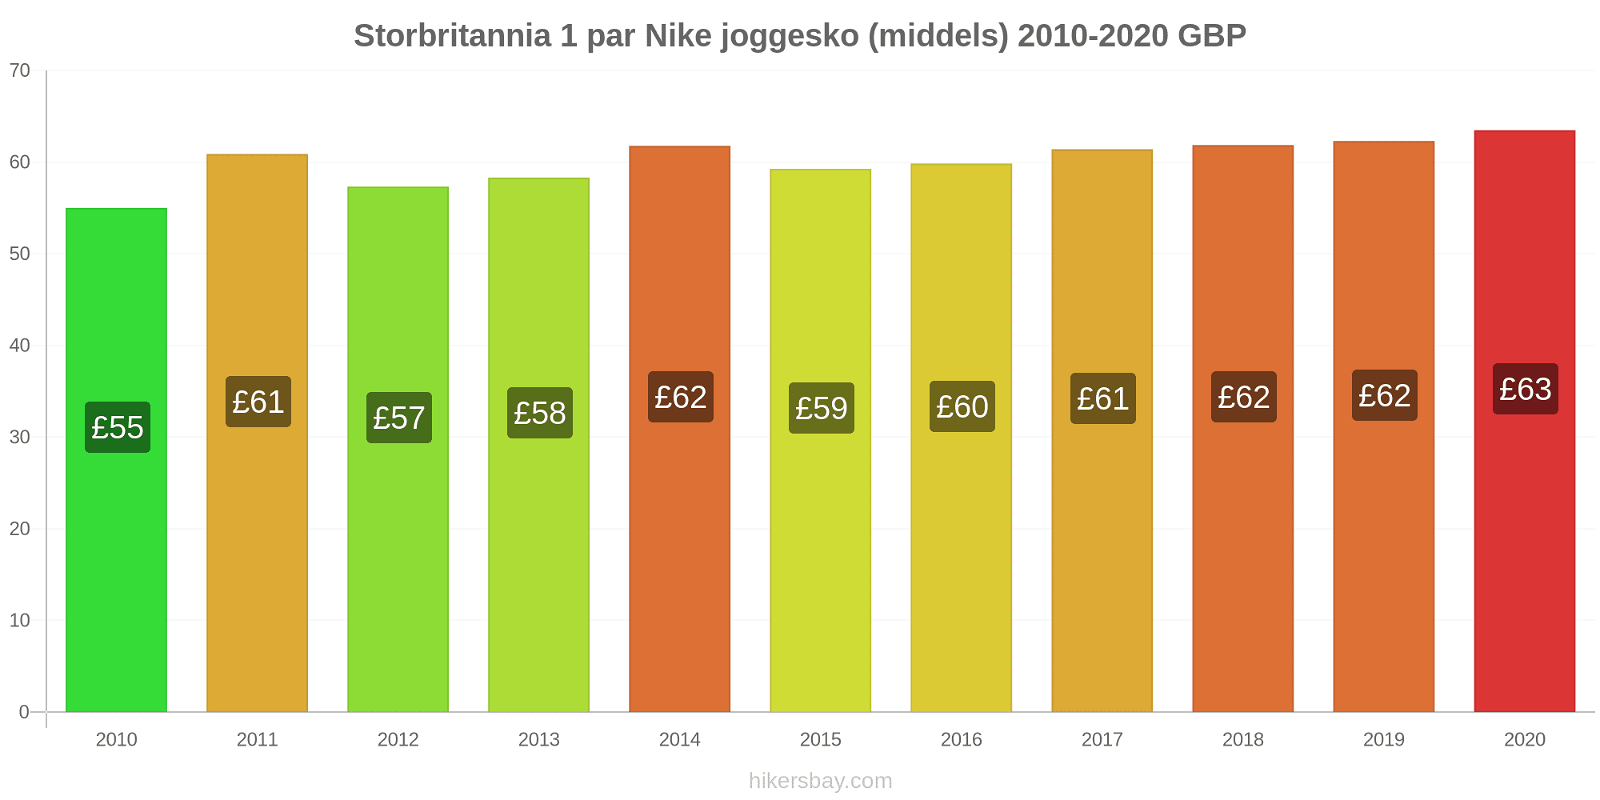 Storbritannia prisendringer 1 par Nike joggesko (middels) hikersbay.com